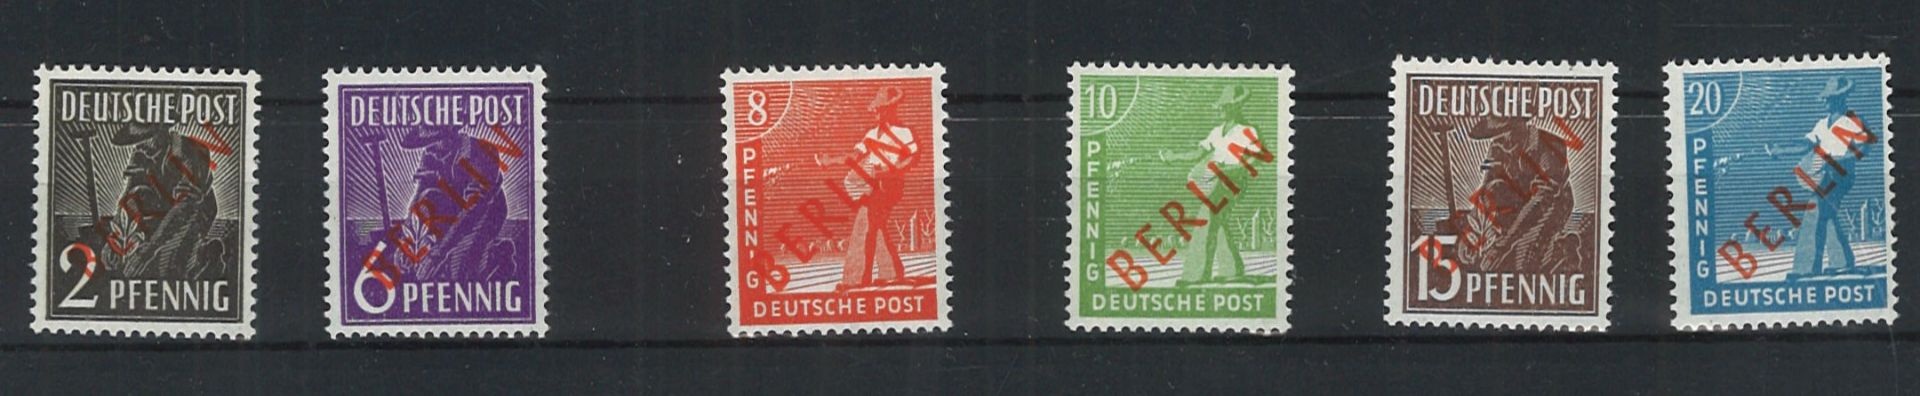 Berlin 1948, postfrisch. MiNr. aus 21-26, alle Werte geprüft Schlegel.